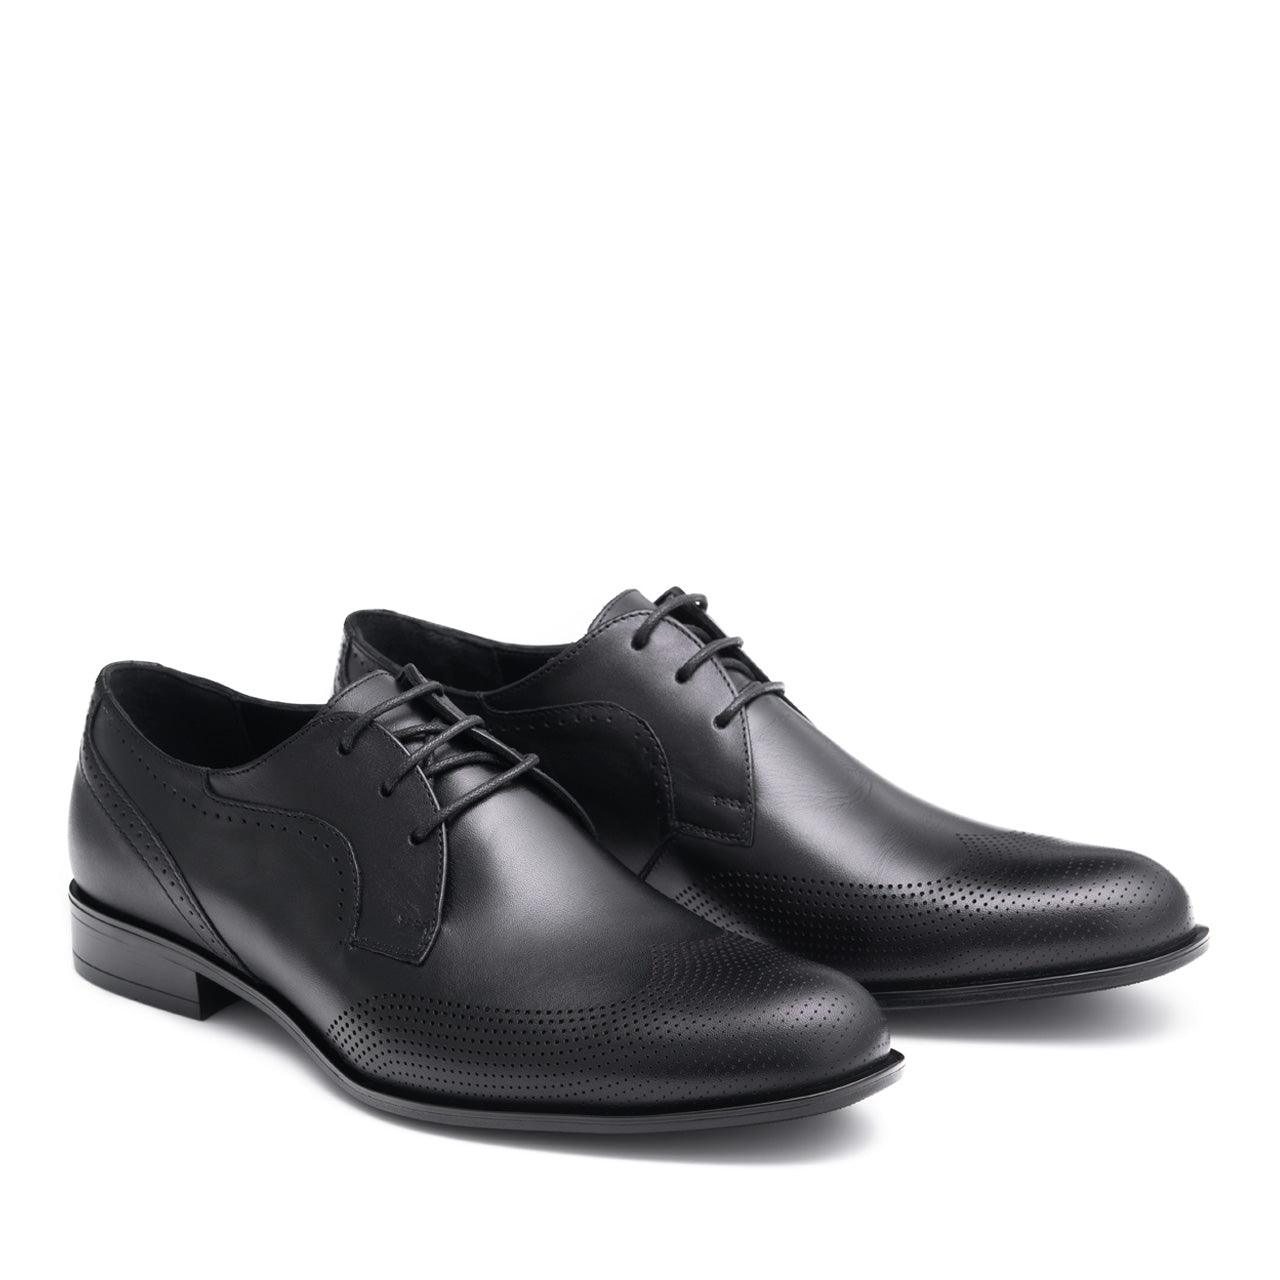 Pantofi eleganti barbati Dominic gravat negru